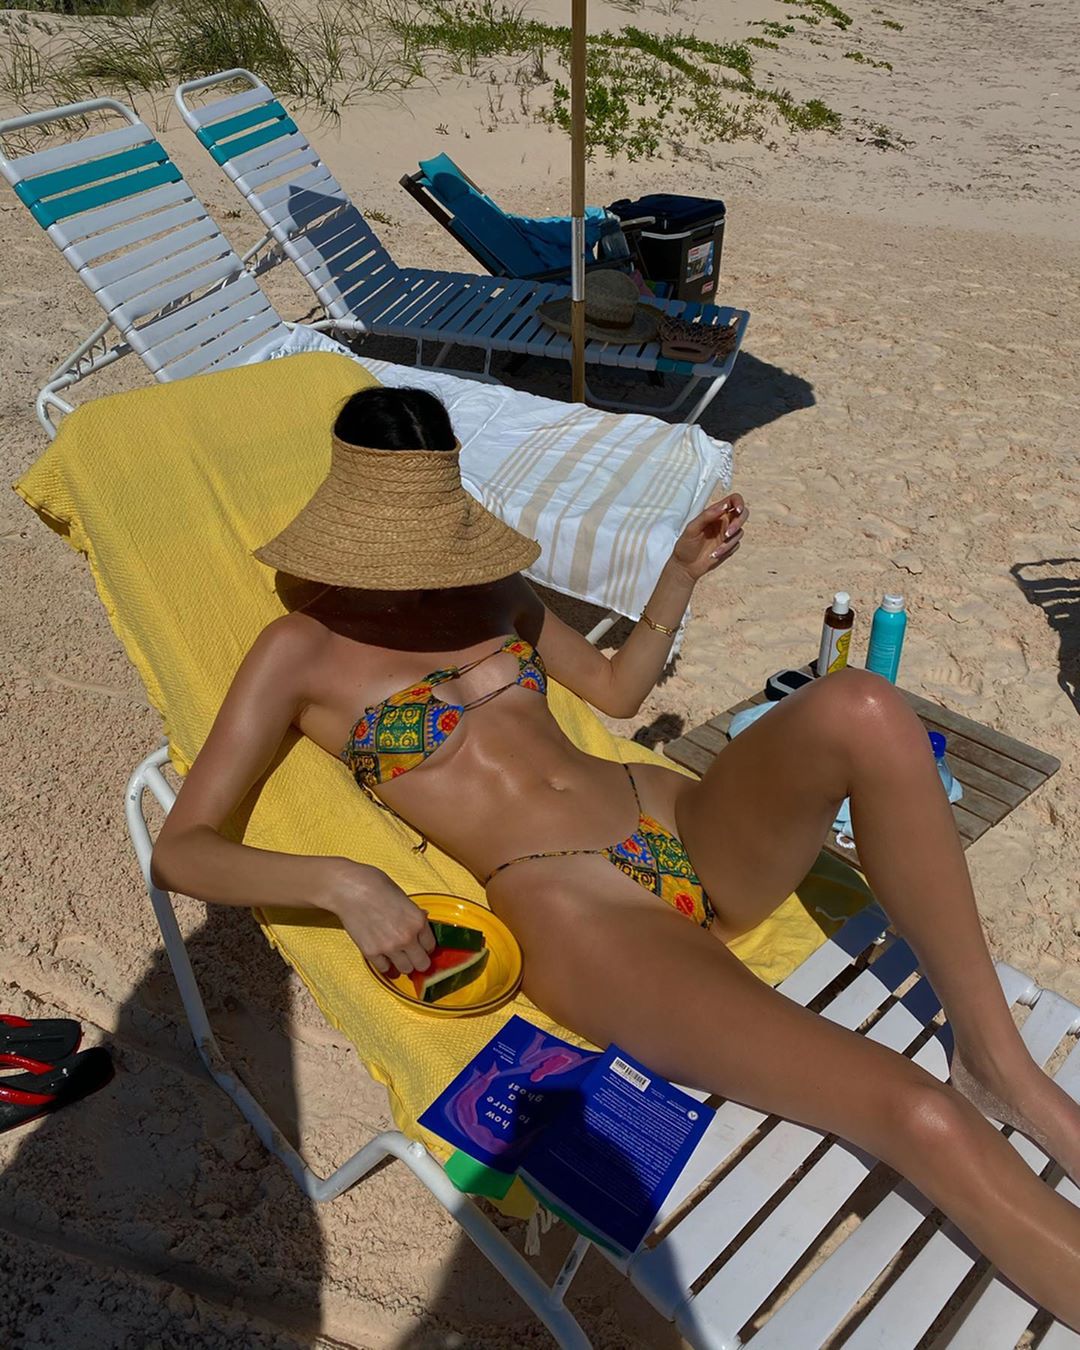 Купальник underboob или "бикини наоборот": на радость мужчинам на пляже (19 фото)